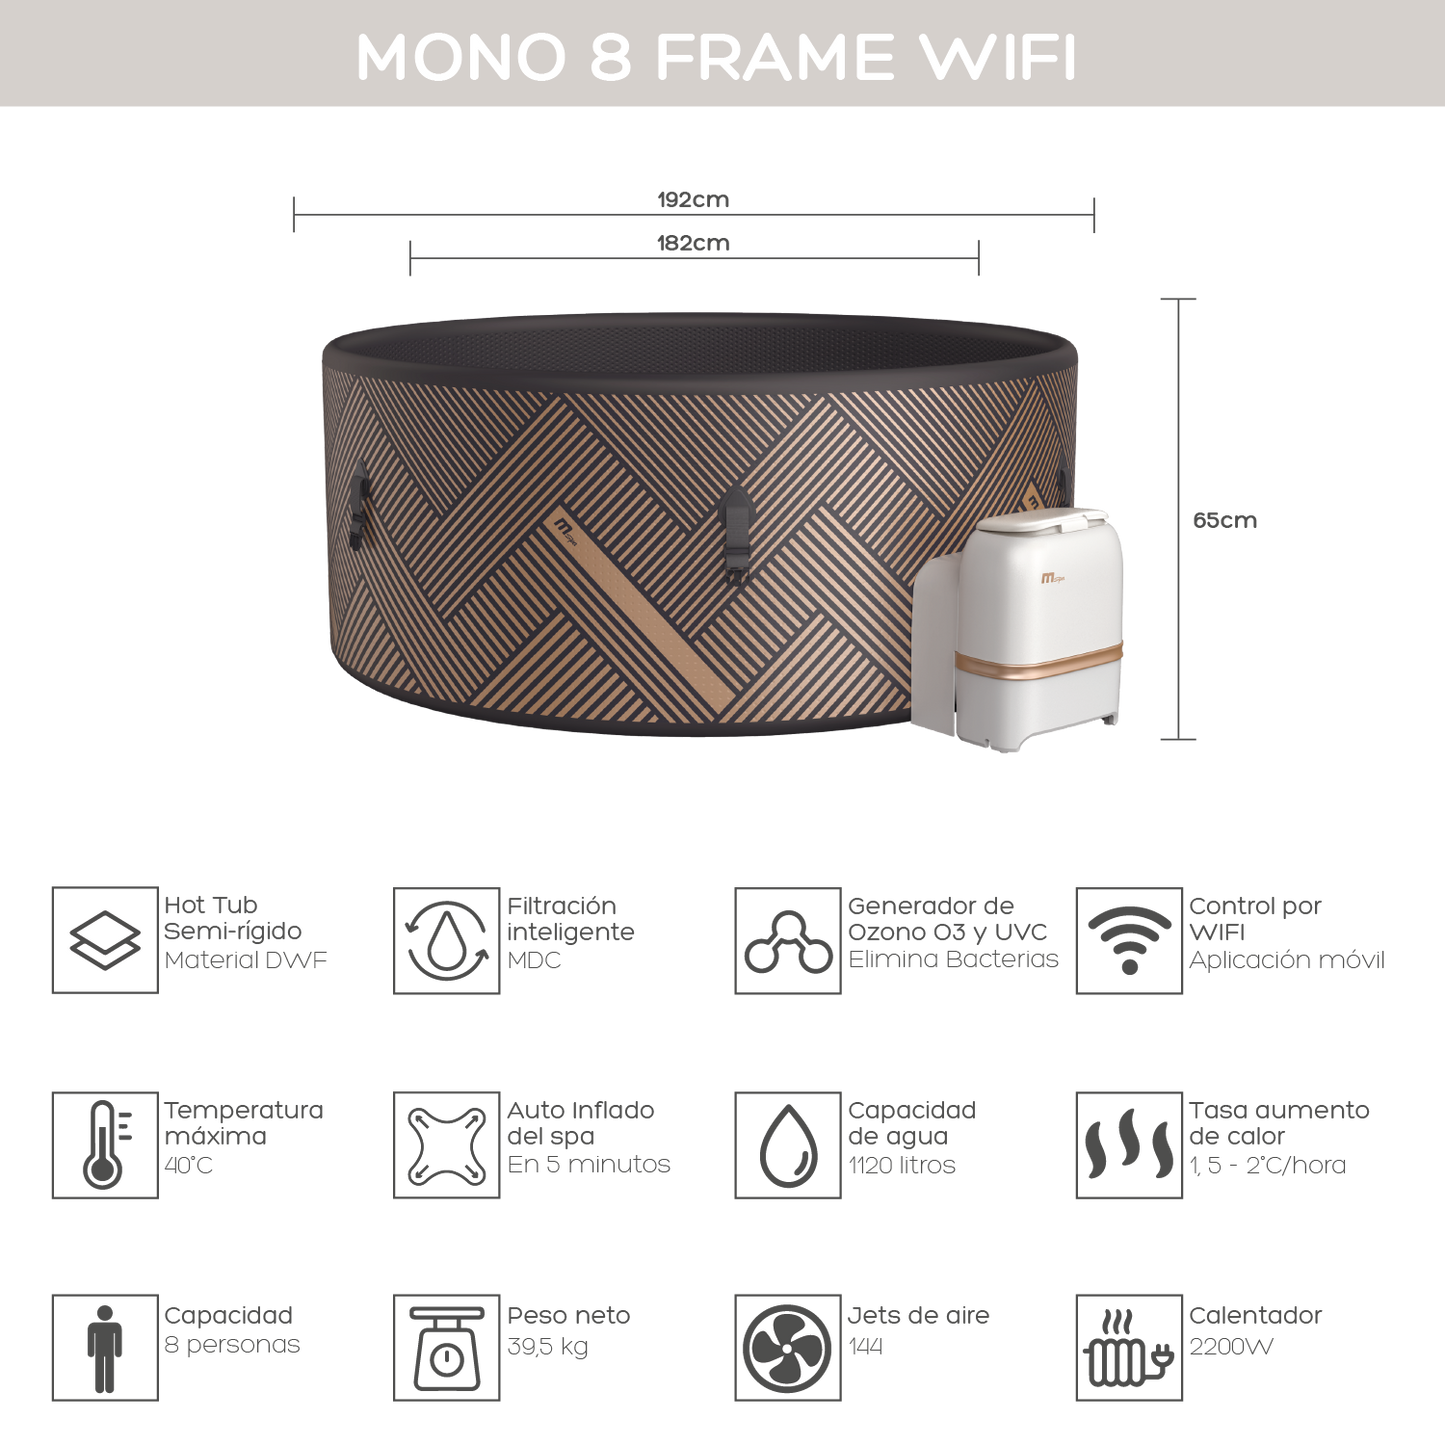 Hot Tub Mono 8 Frame Wifi